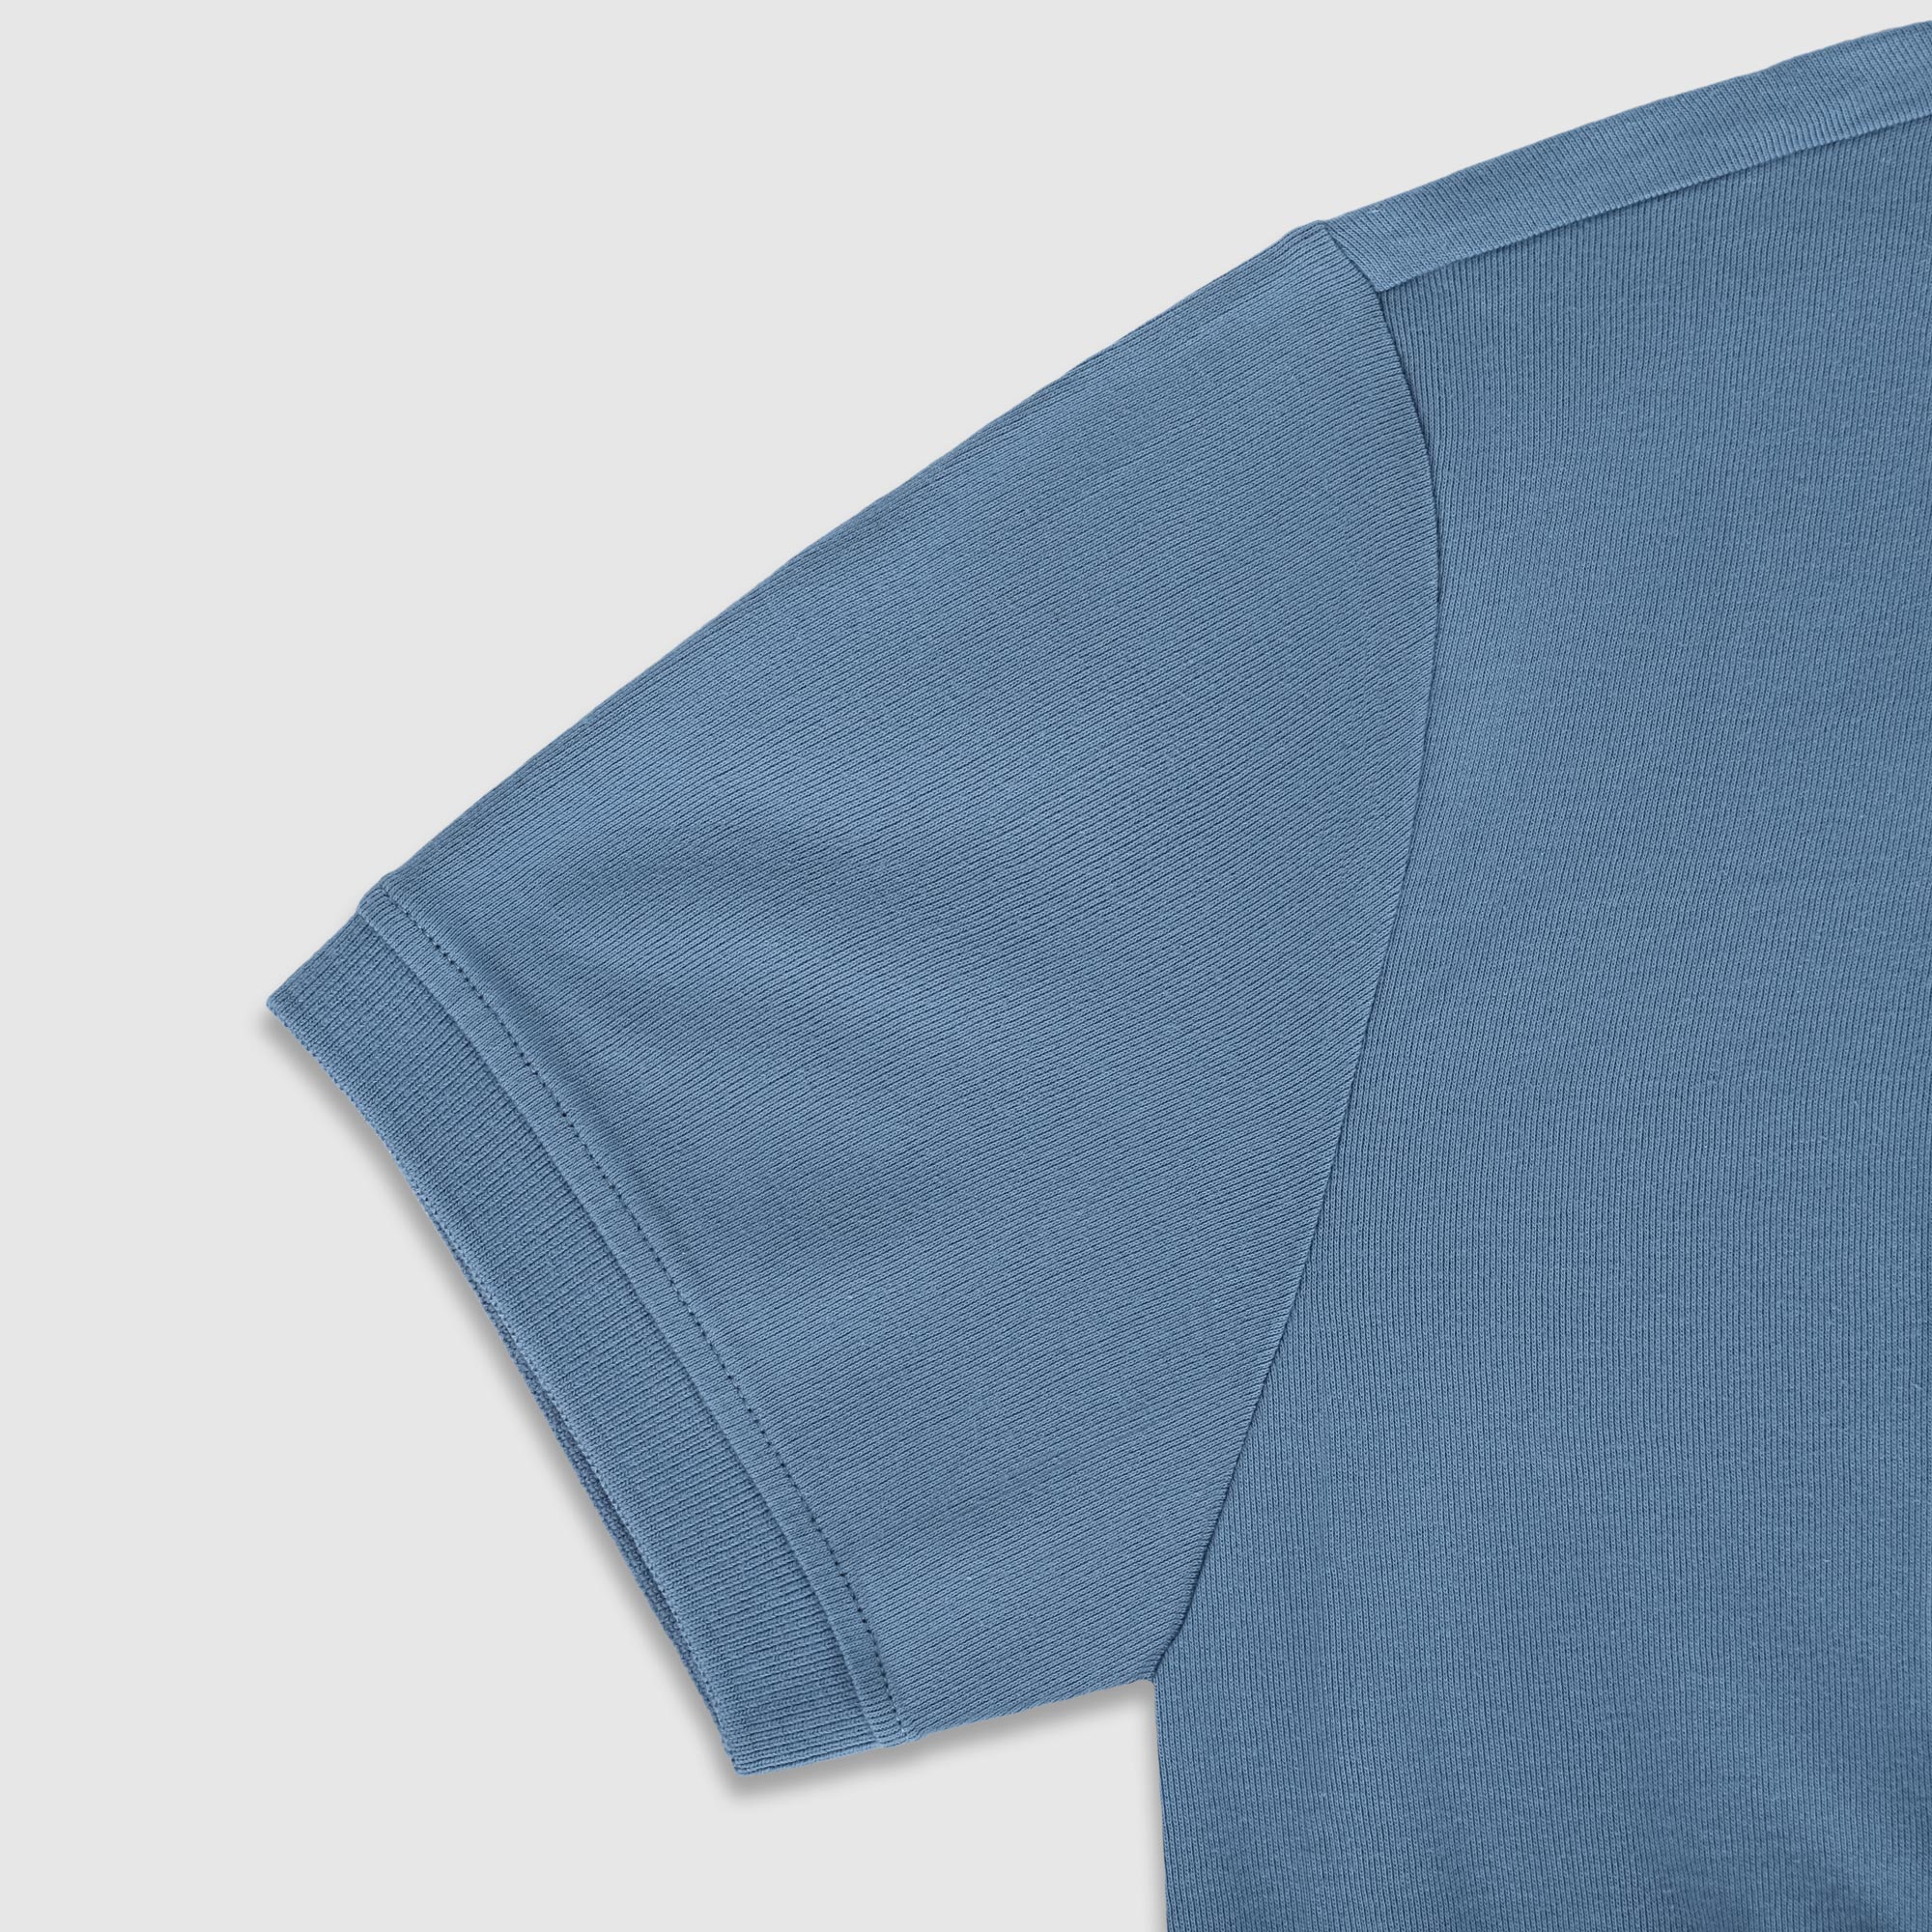 Рубашка мужская Diva Teks поло голубая, цвет голубой, размер 2XL - фото 4